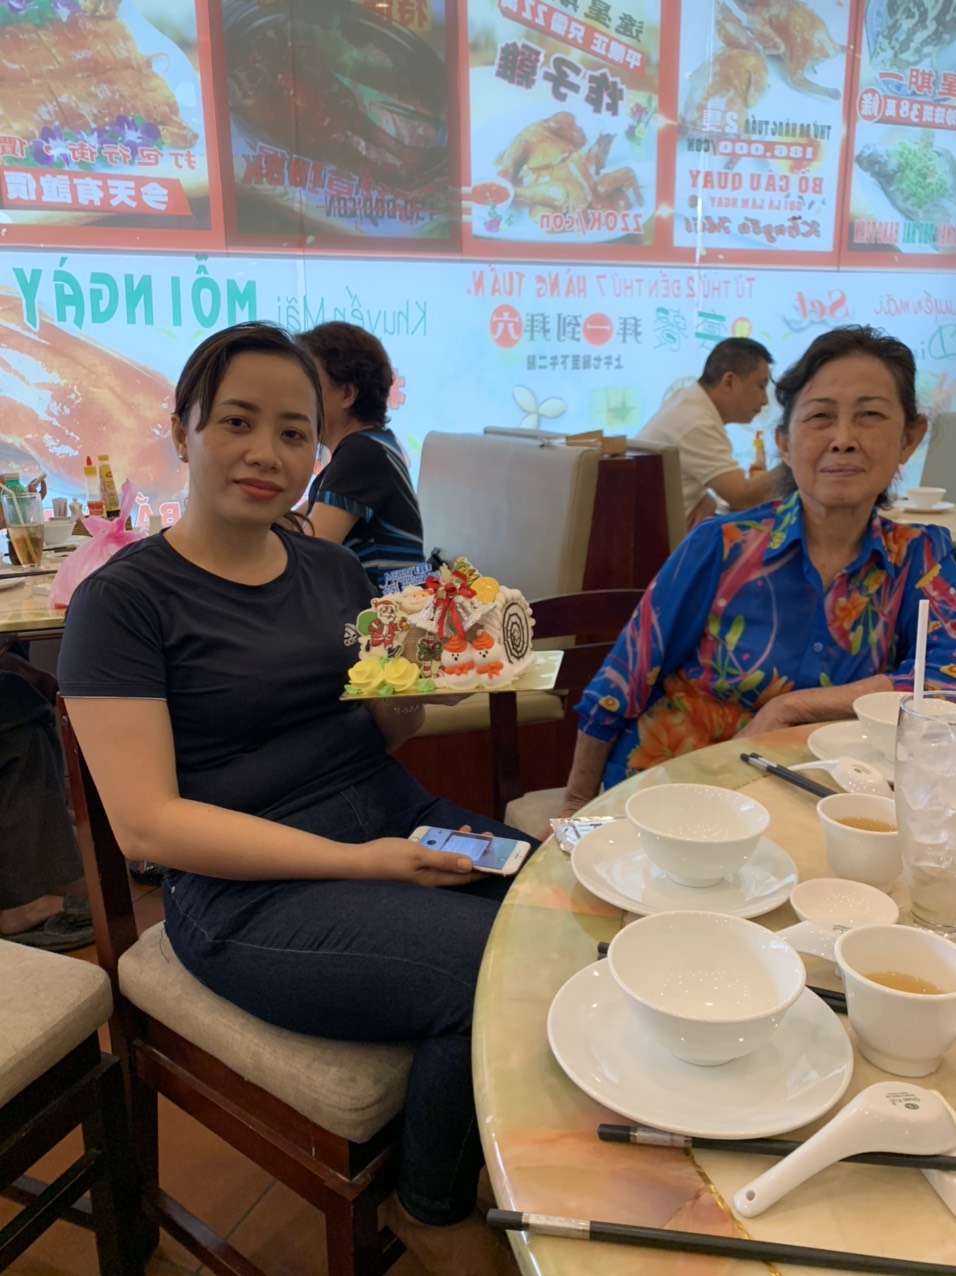 Noel năm 2019 khách đến đông đúc và nhận được quà từ ông già Noel đây - Haihoangbinhtan.com 1